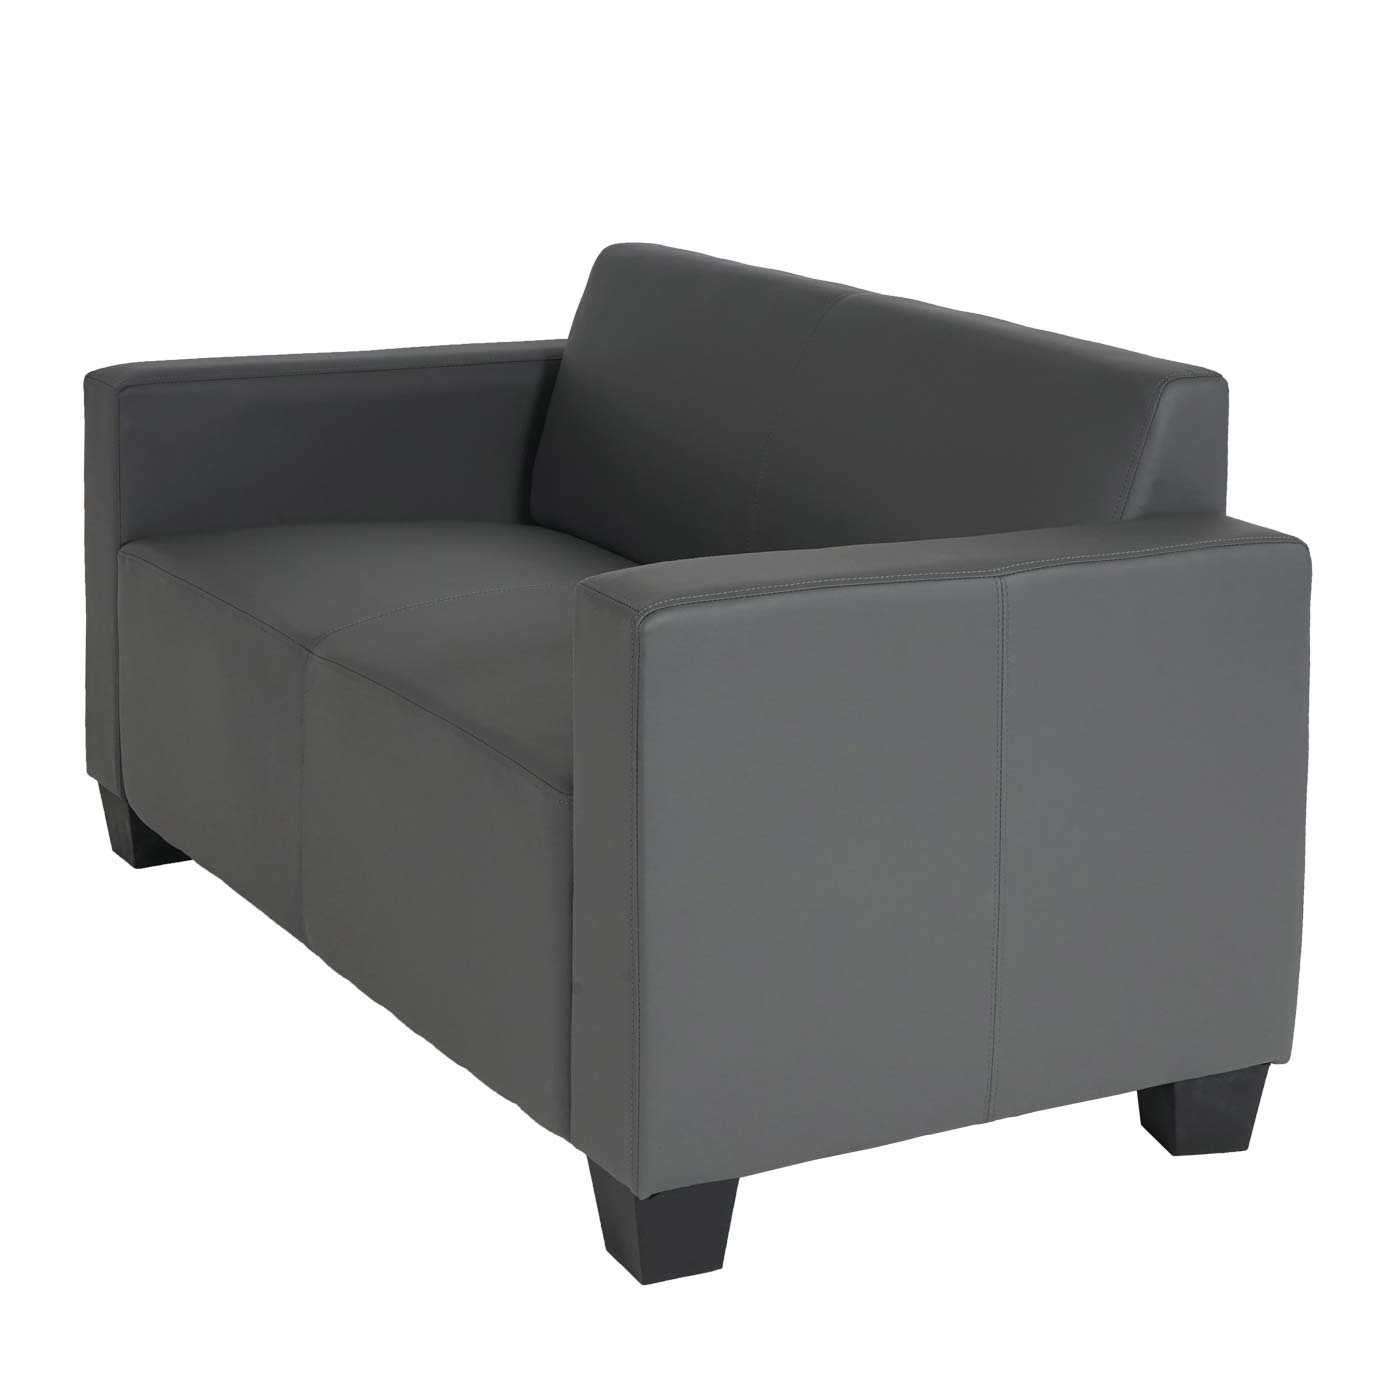 Sofa-Garnitur Couch-Garnitur 2x 2er Sofa Lyon leicht seitliche Ansicht